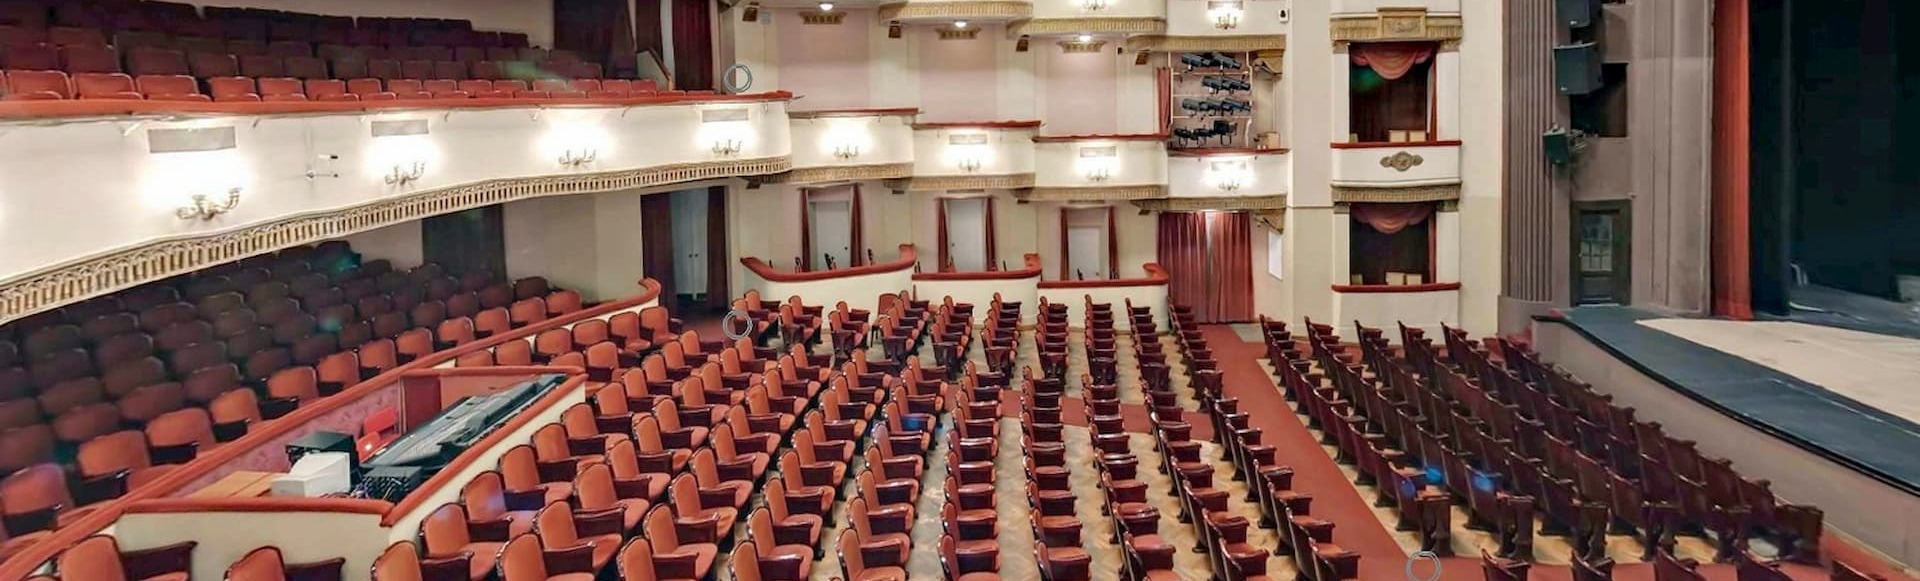 Схема зала театра ермоловой основная сцена фото